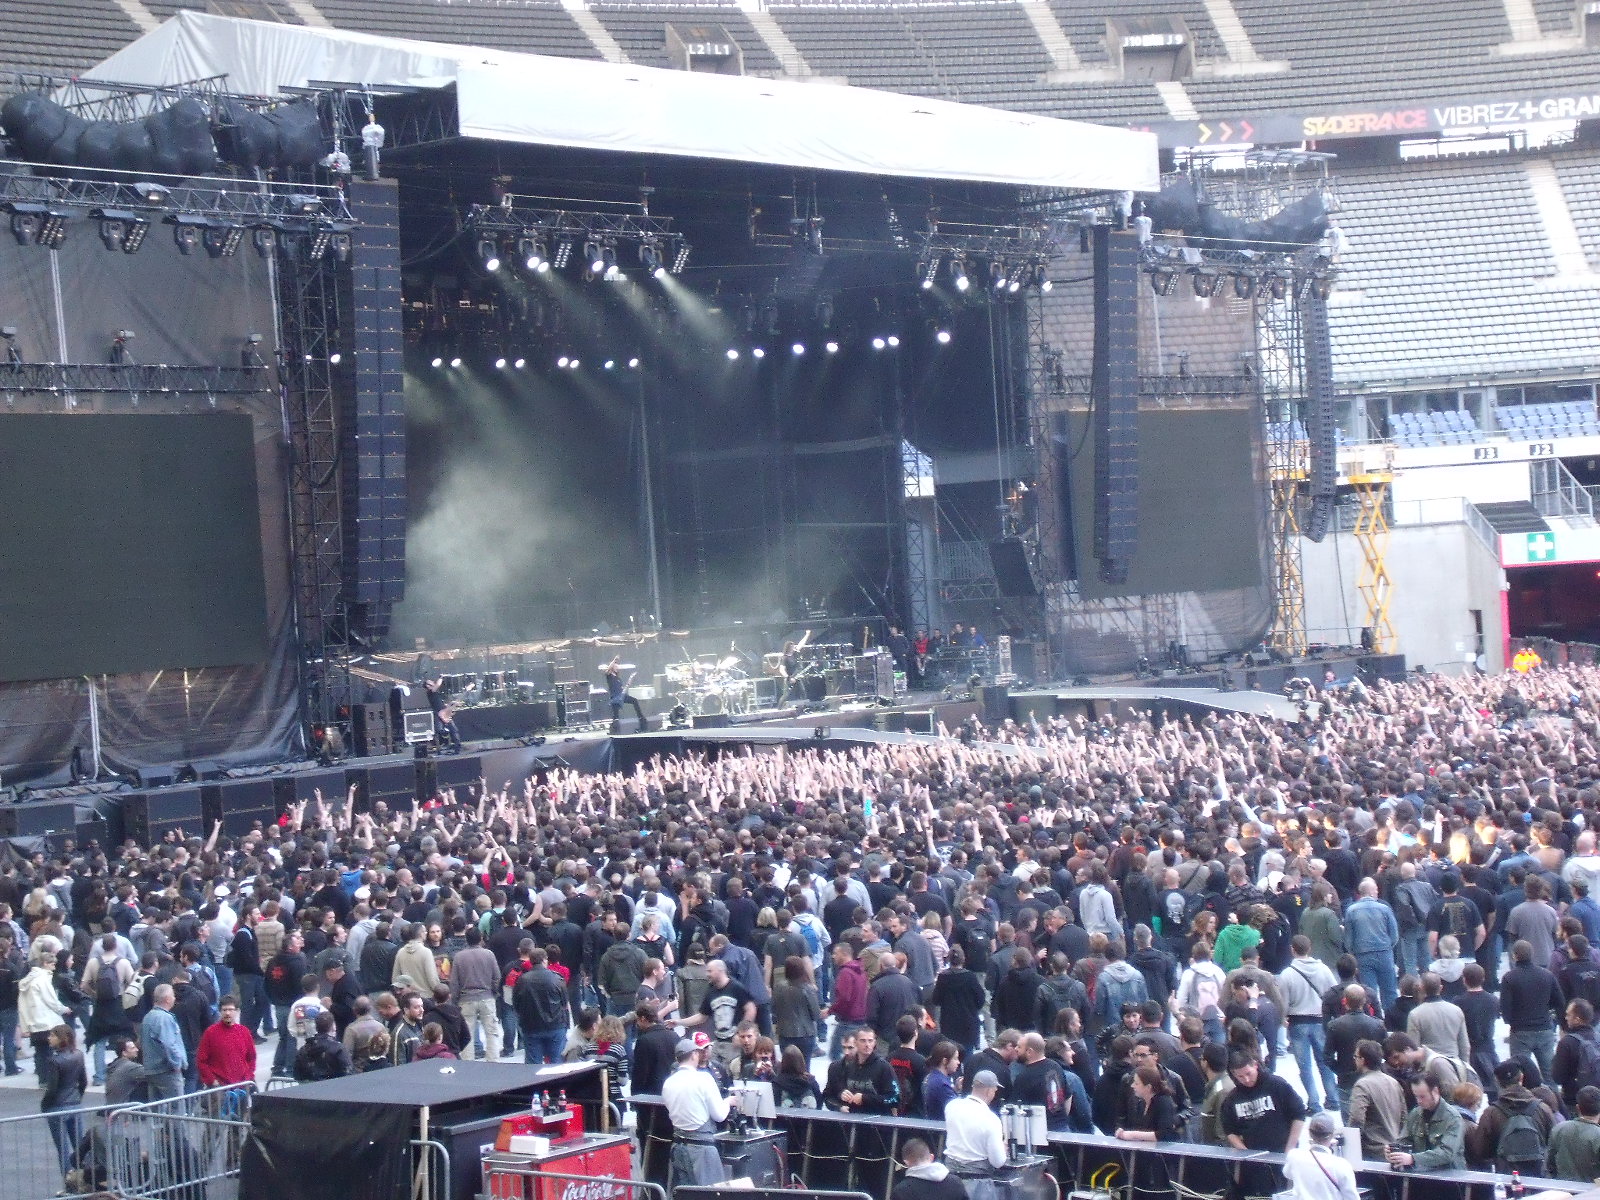 Metallica au Stade de France